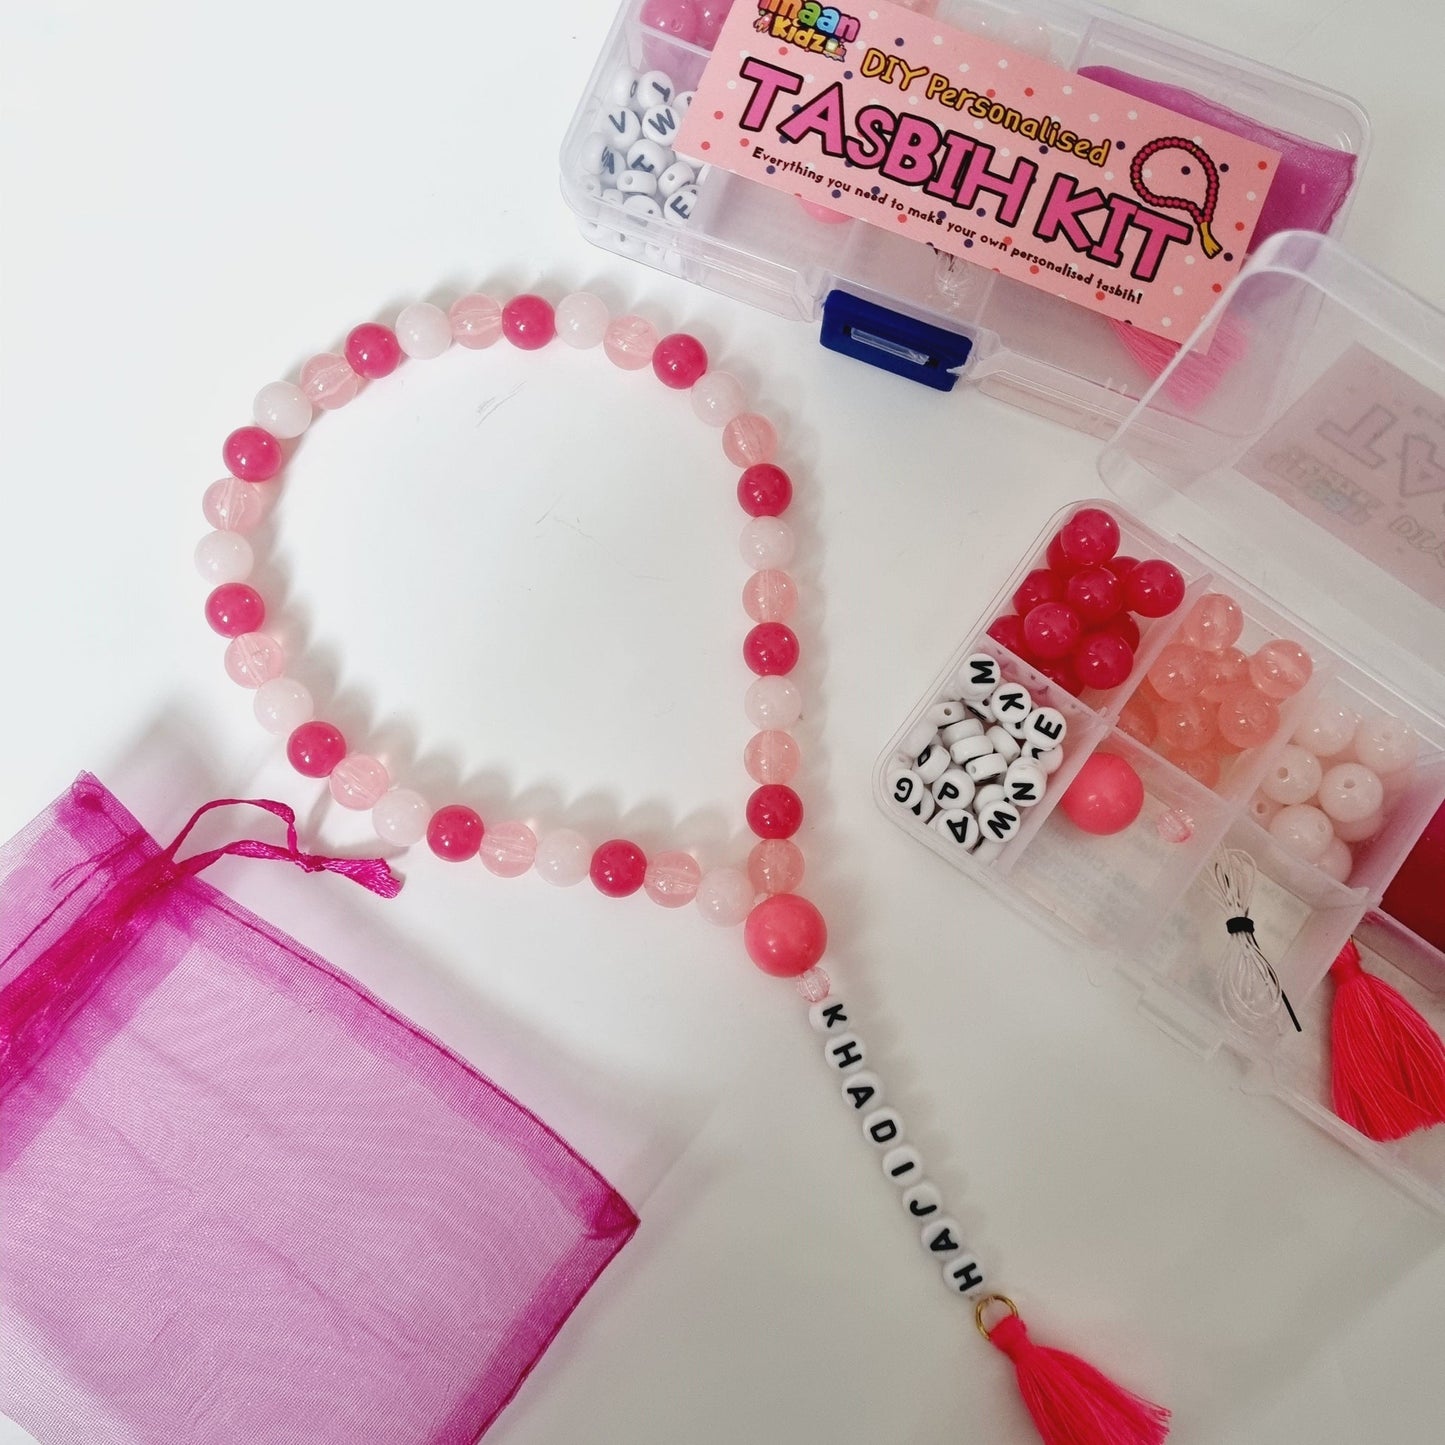 DIY Personalised Tasbih Making Kit - Pink